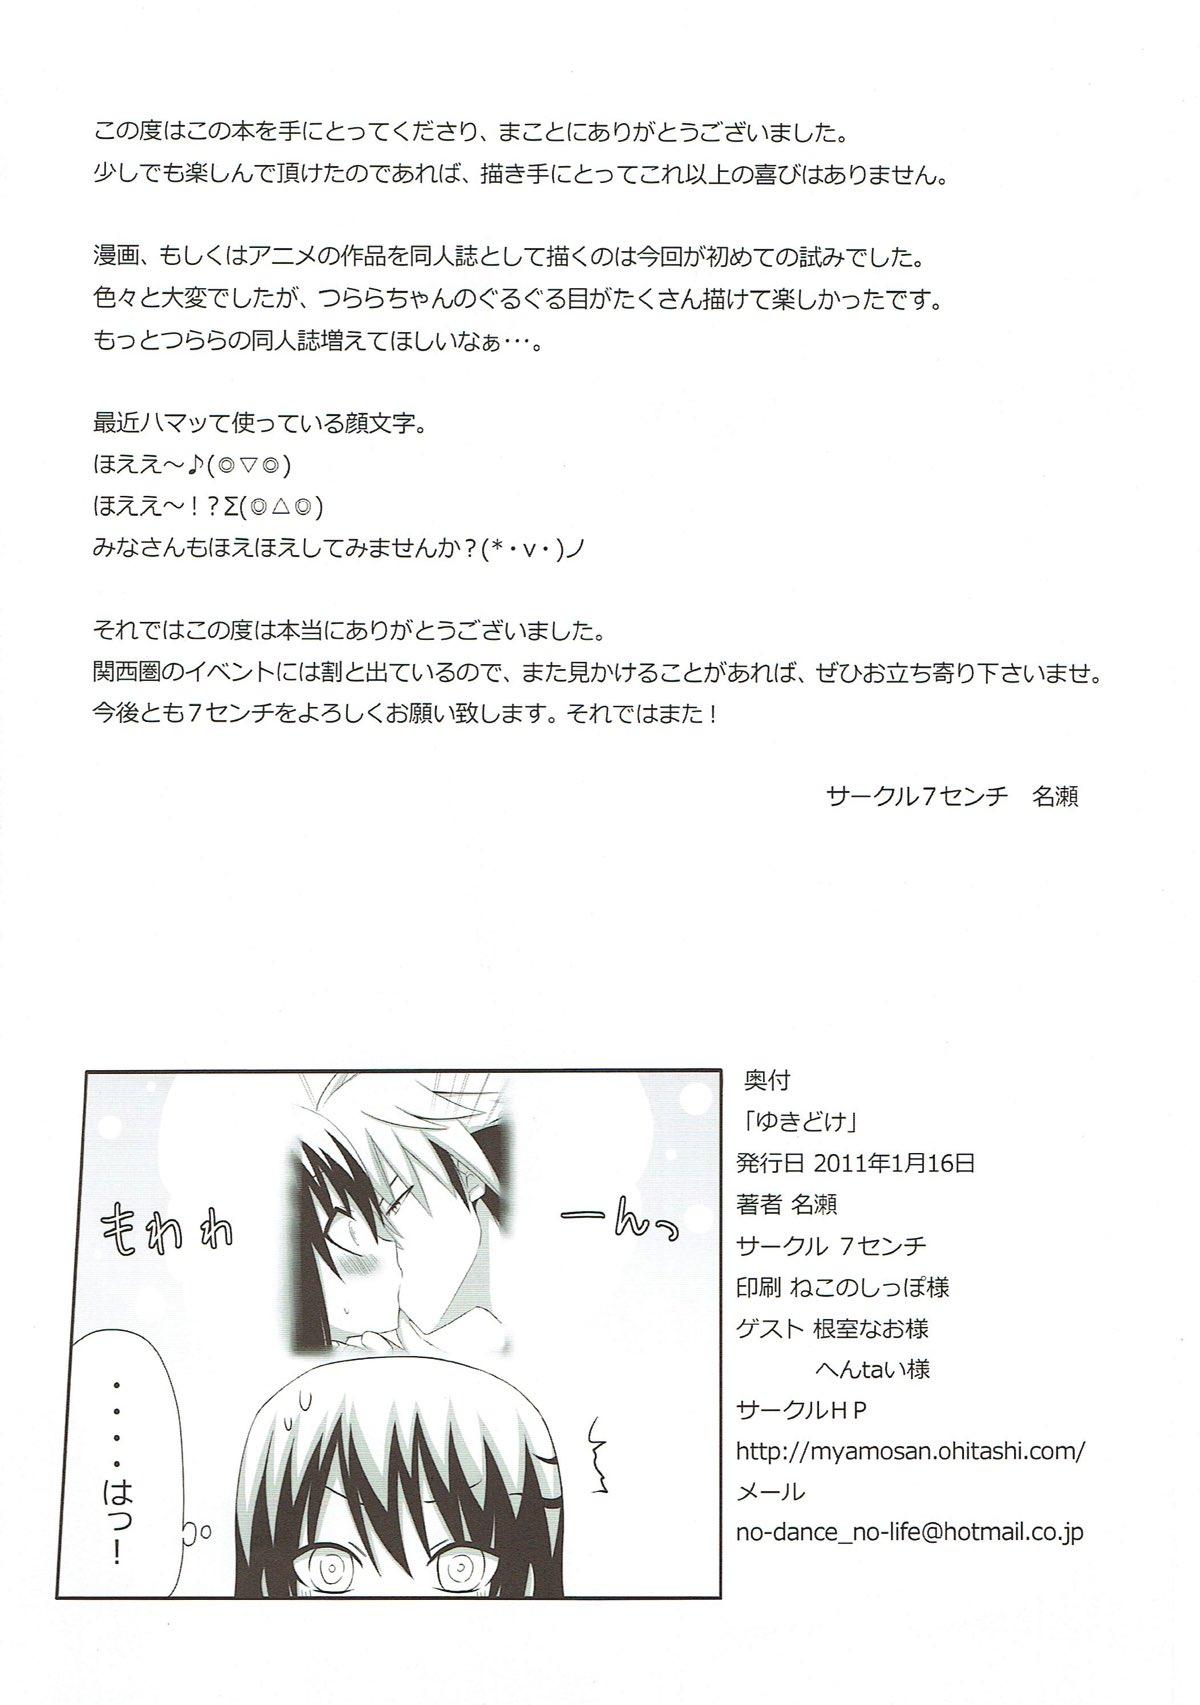 Sixtynine Yukidoke - Nurarihyon no mago Exhibition - Page 24